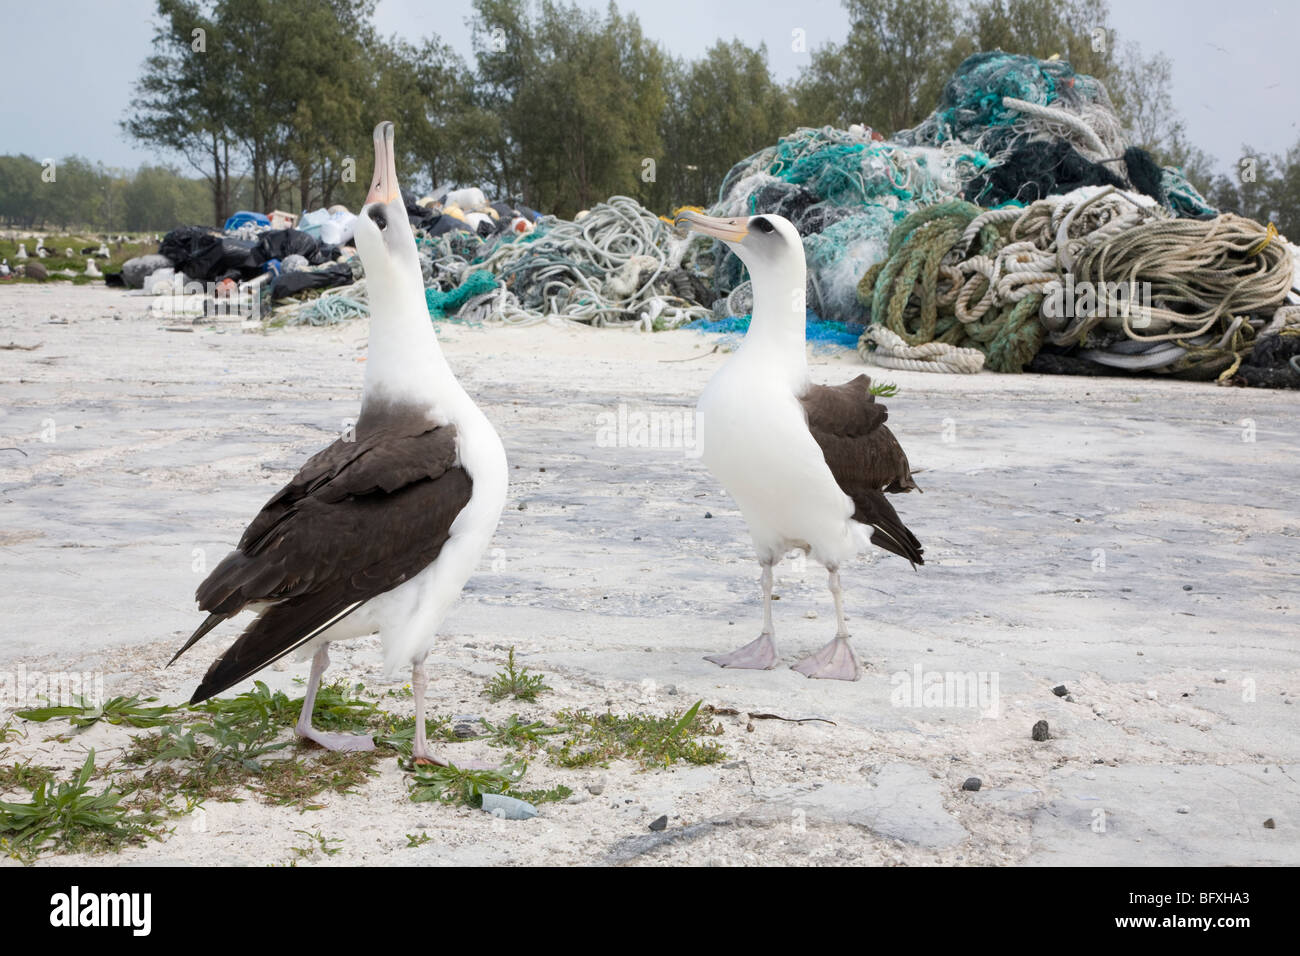 El cortejo Laysan Albatross baila cerca de montones de desechos marinos, incluyendo redes de pesca y plástico recolectado en las costas de la isla del Pacífico Norte Foto de stock